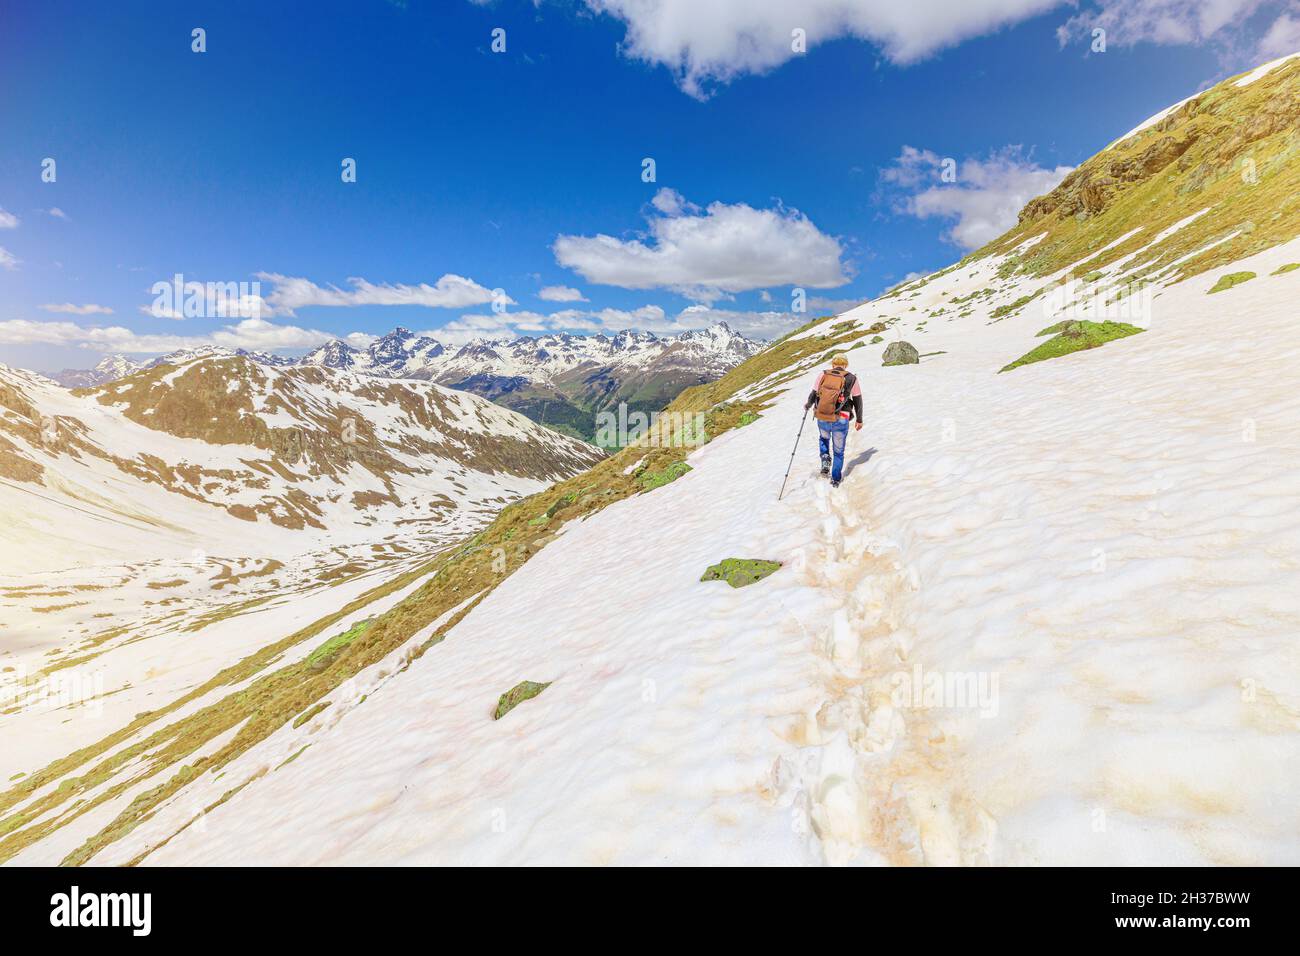 Homme suisse marchant dans la neige sur le sentier glacé de Muottas Muragl en Suisse.Excursion populaire en montagne dans la neige dans le canton des Grisons en Suisse. Banque D'Images